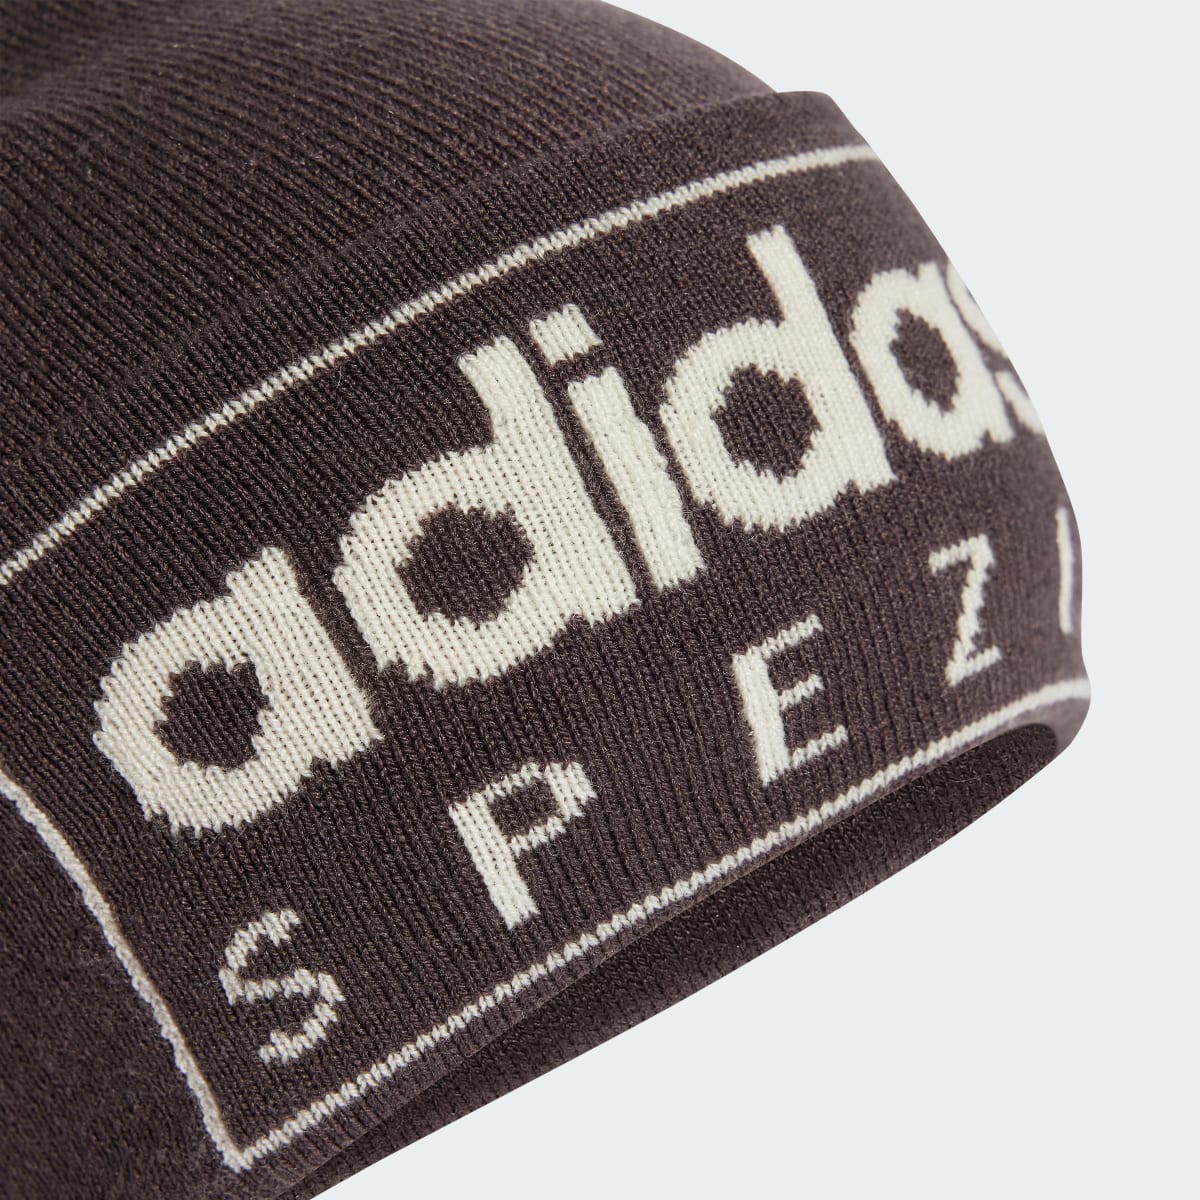 Adidas Spezial Hat. 4